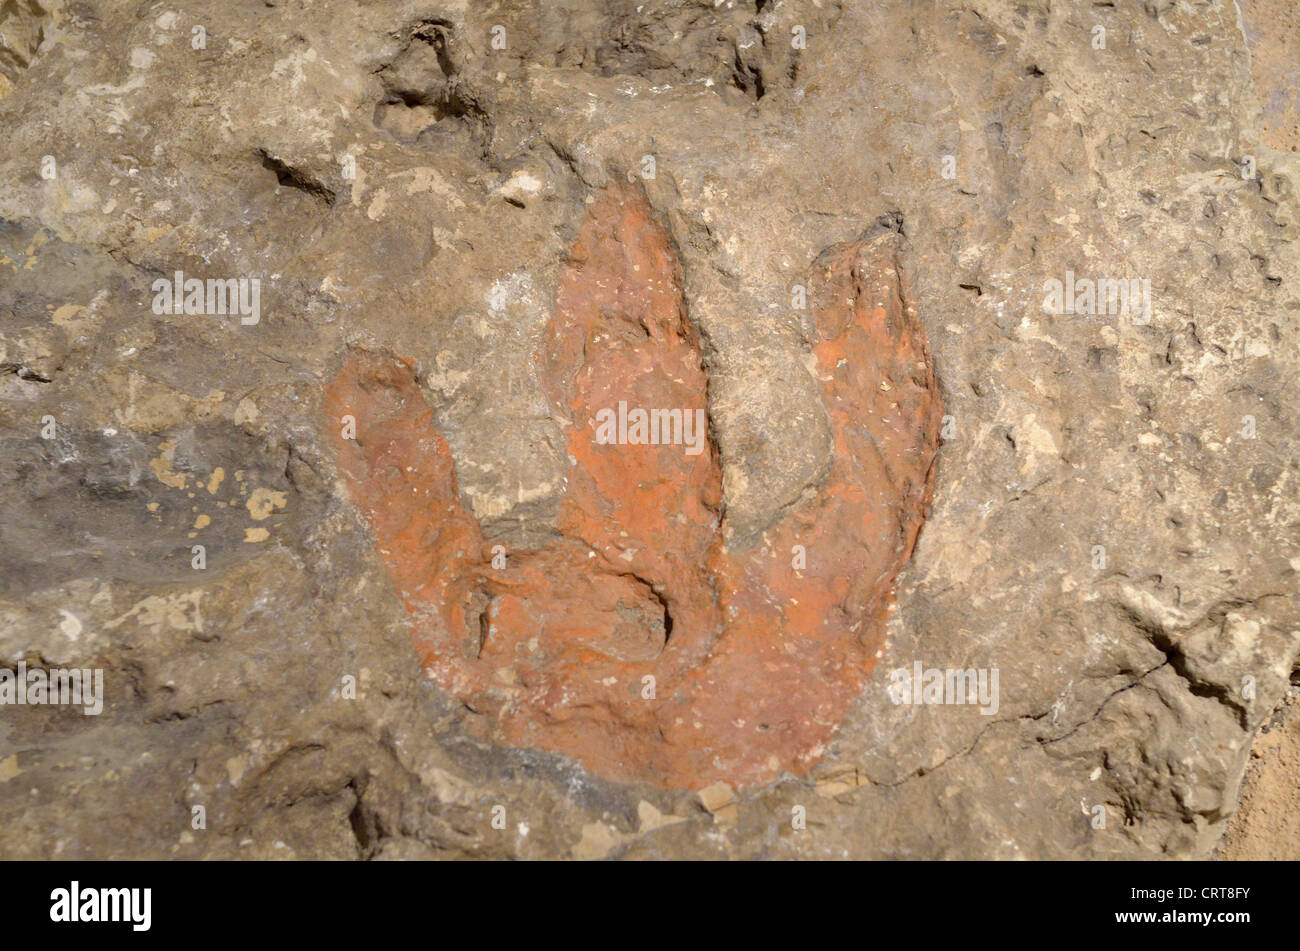 Versteinerter Fußabdruck eines Theropoden Dinosauriers. Kreidezeit Alter. Stockfoto